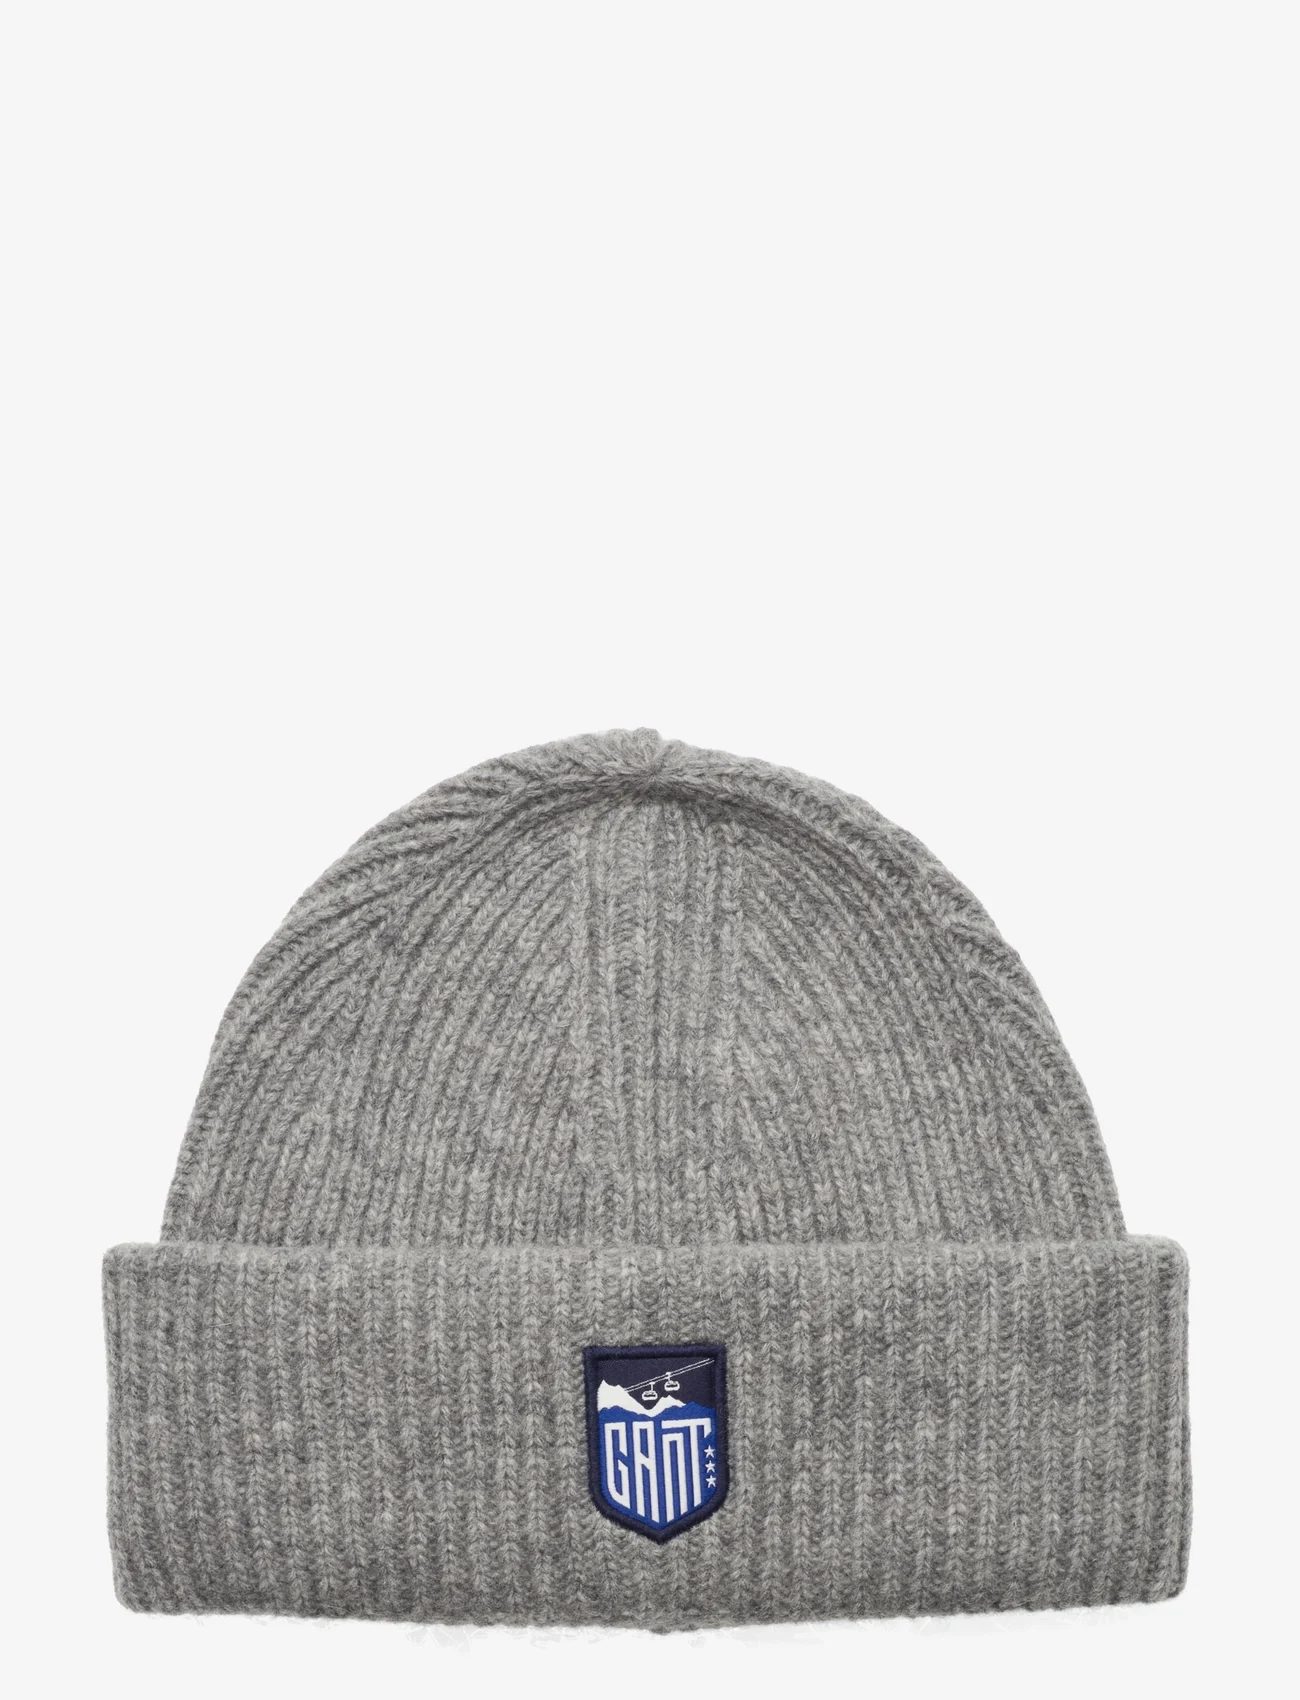 GANT - ALPINE BADGE BEANIE - winter hats - grey melange - 0